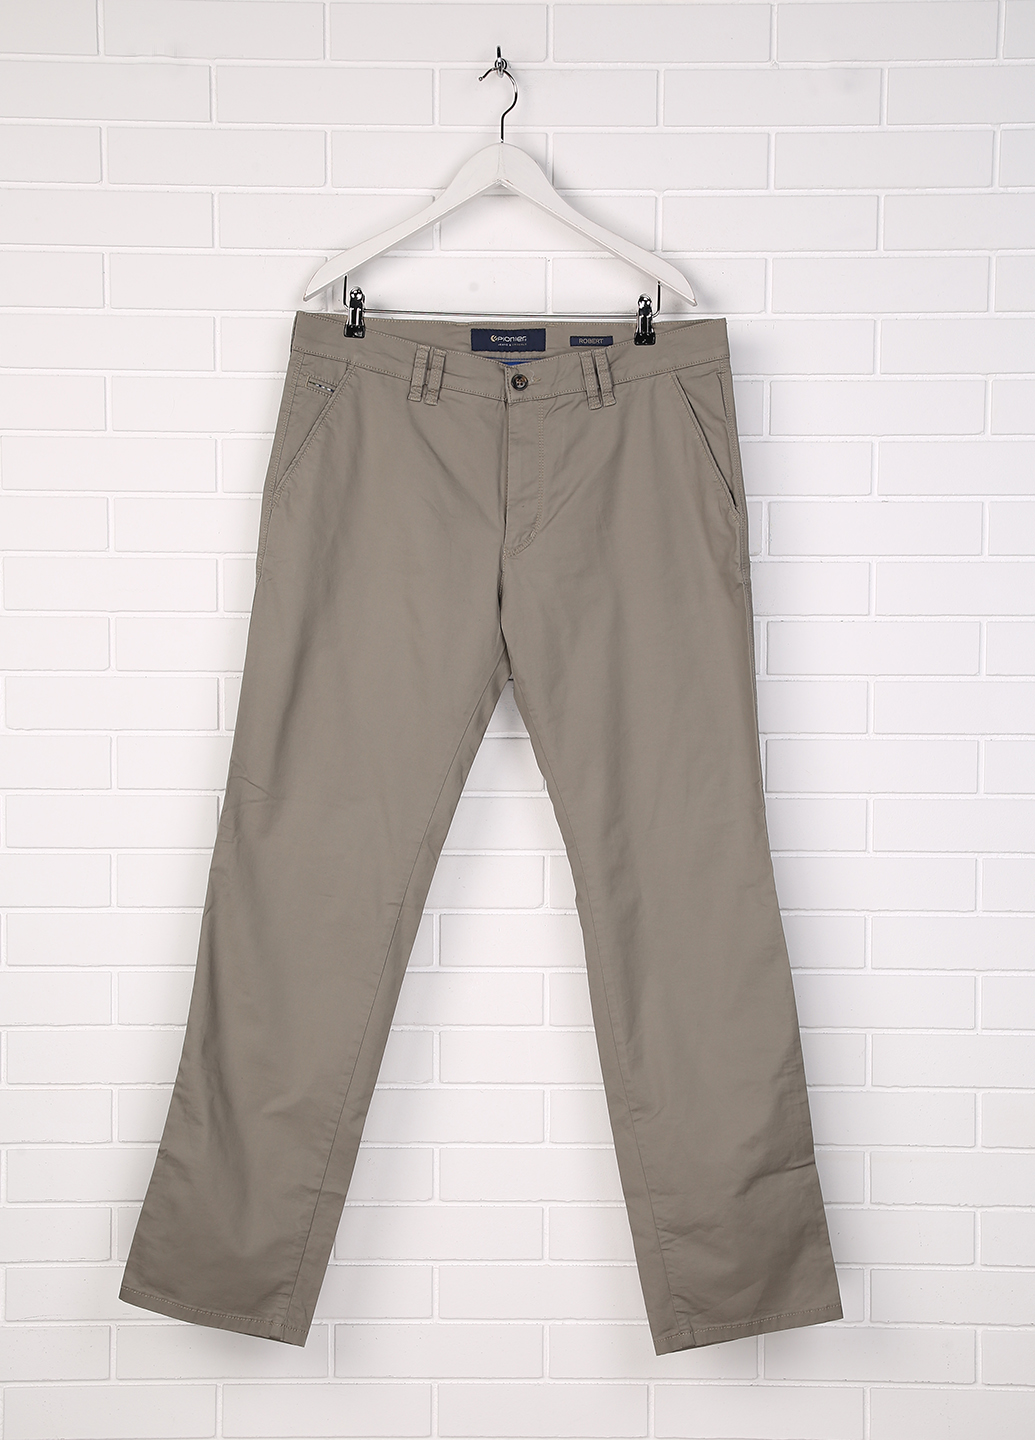 Мужские джинсы Pionier 42/34 Серый (Р-9-016)